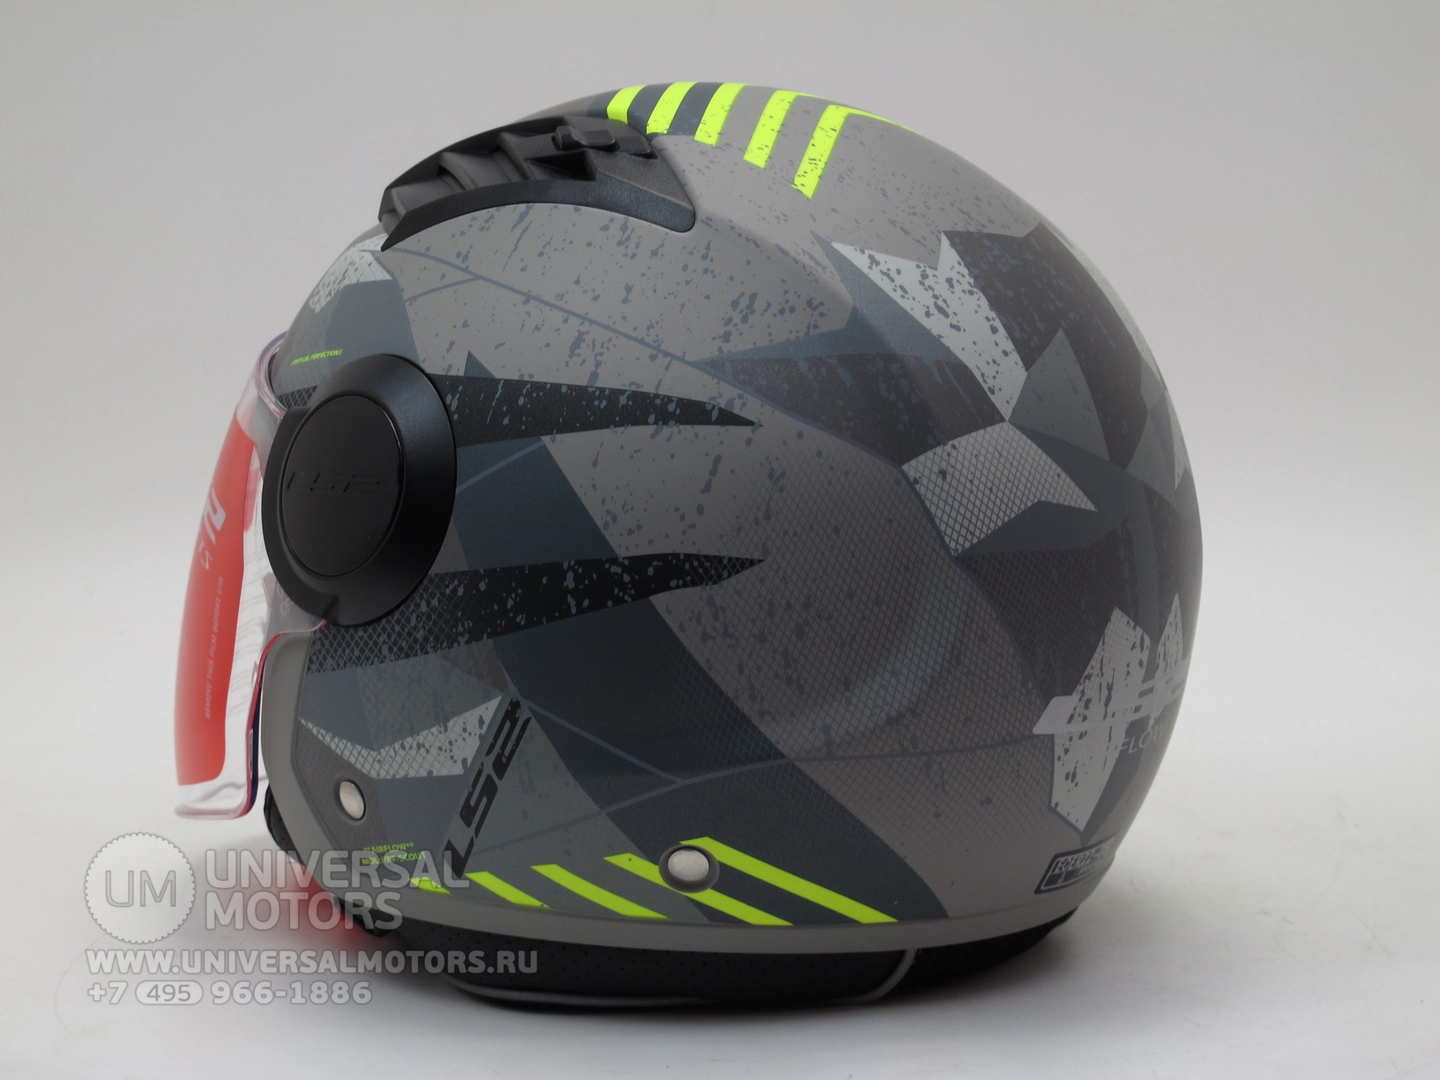 Шлем LS2 OF562 AIRFLOW camo MATT TITANUM YELLOW, Застежка ремешка металлическая